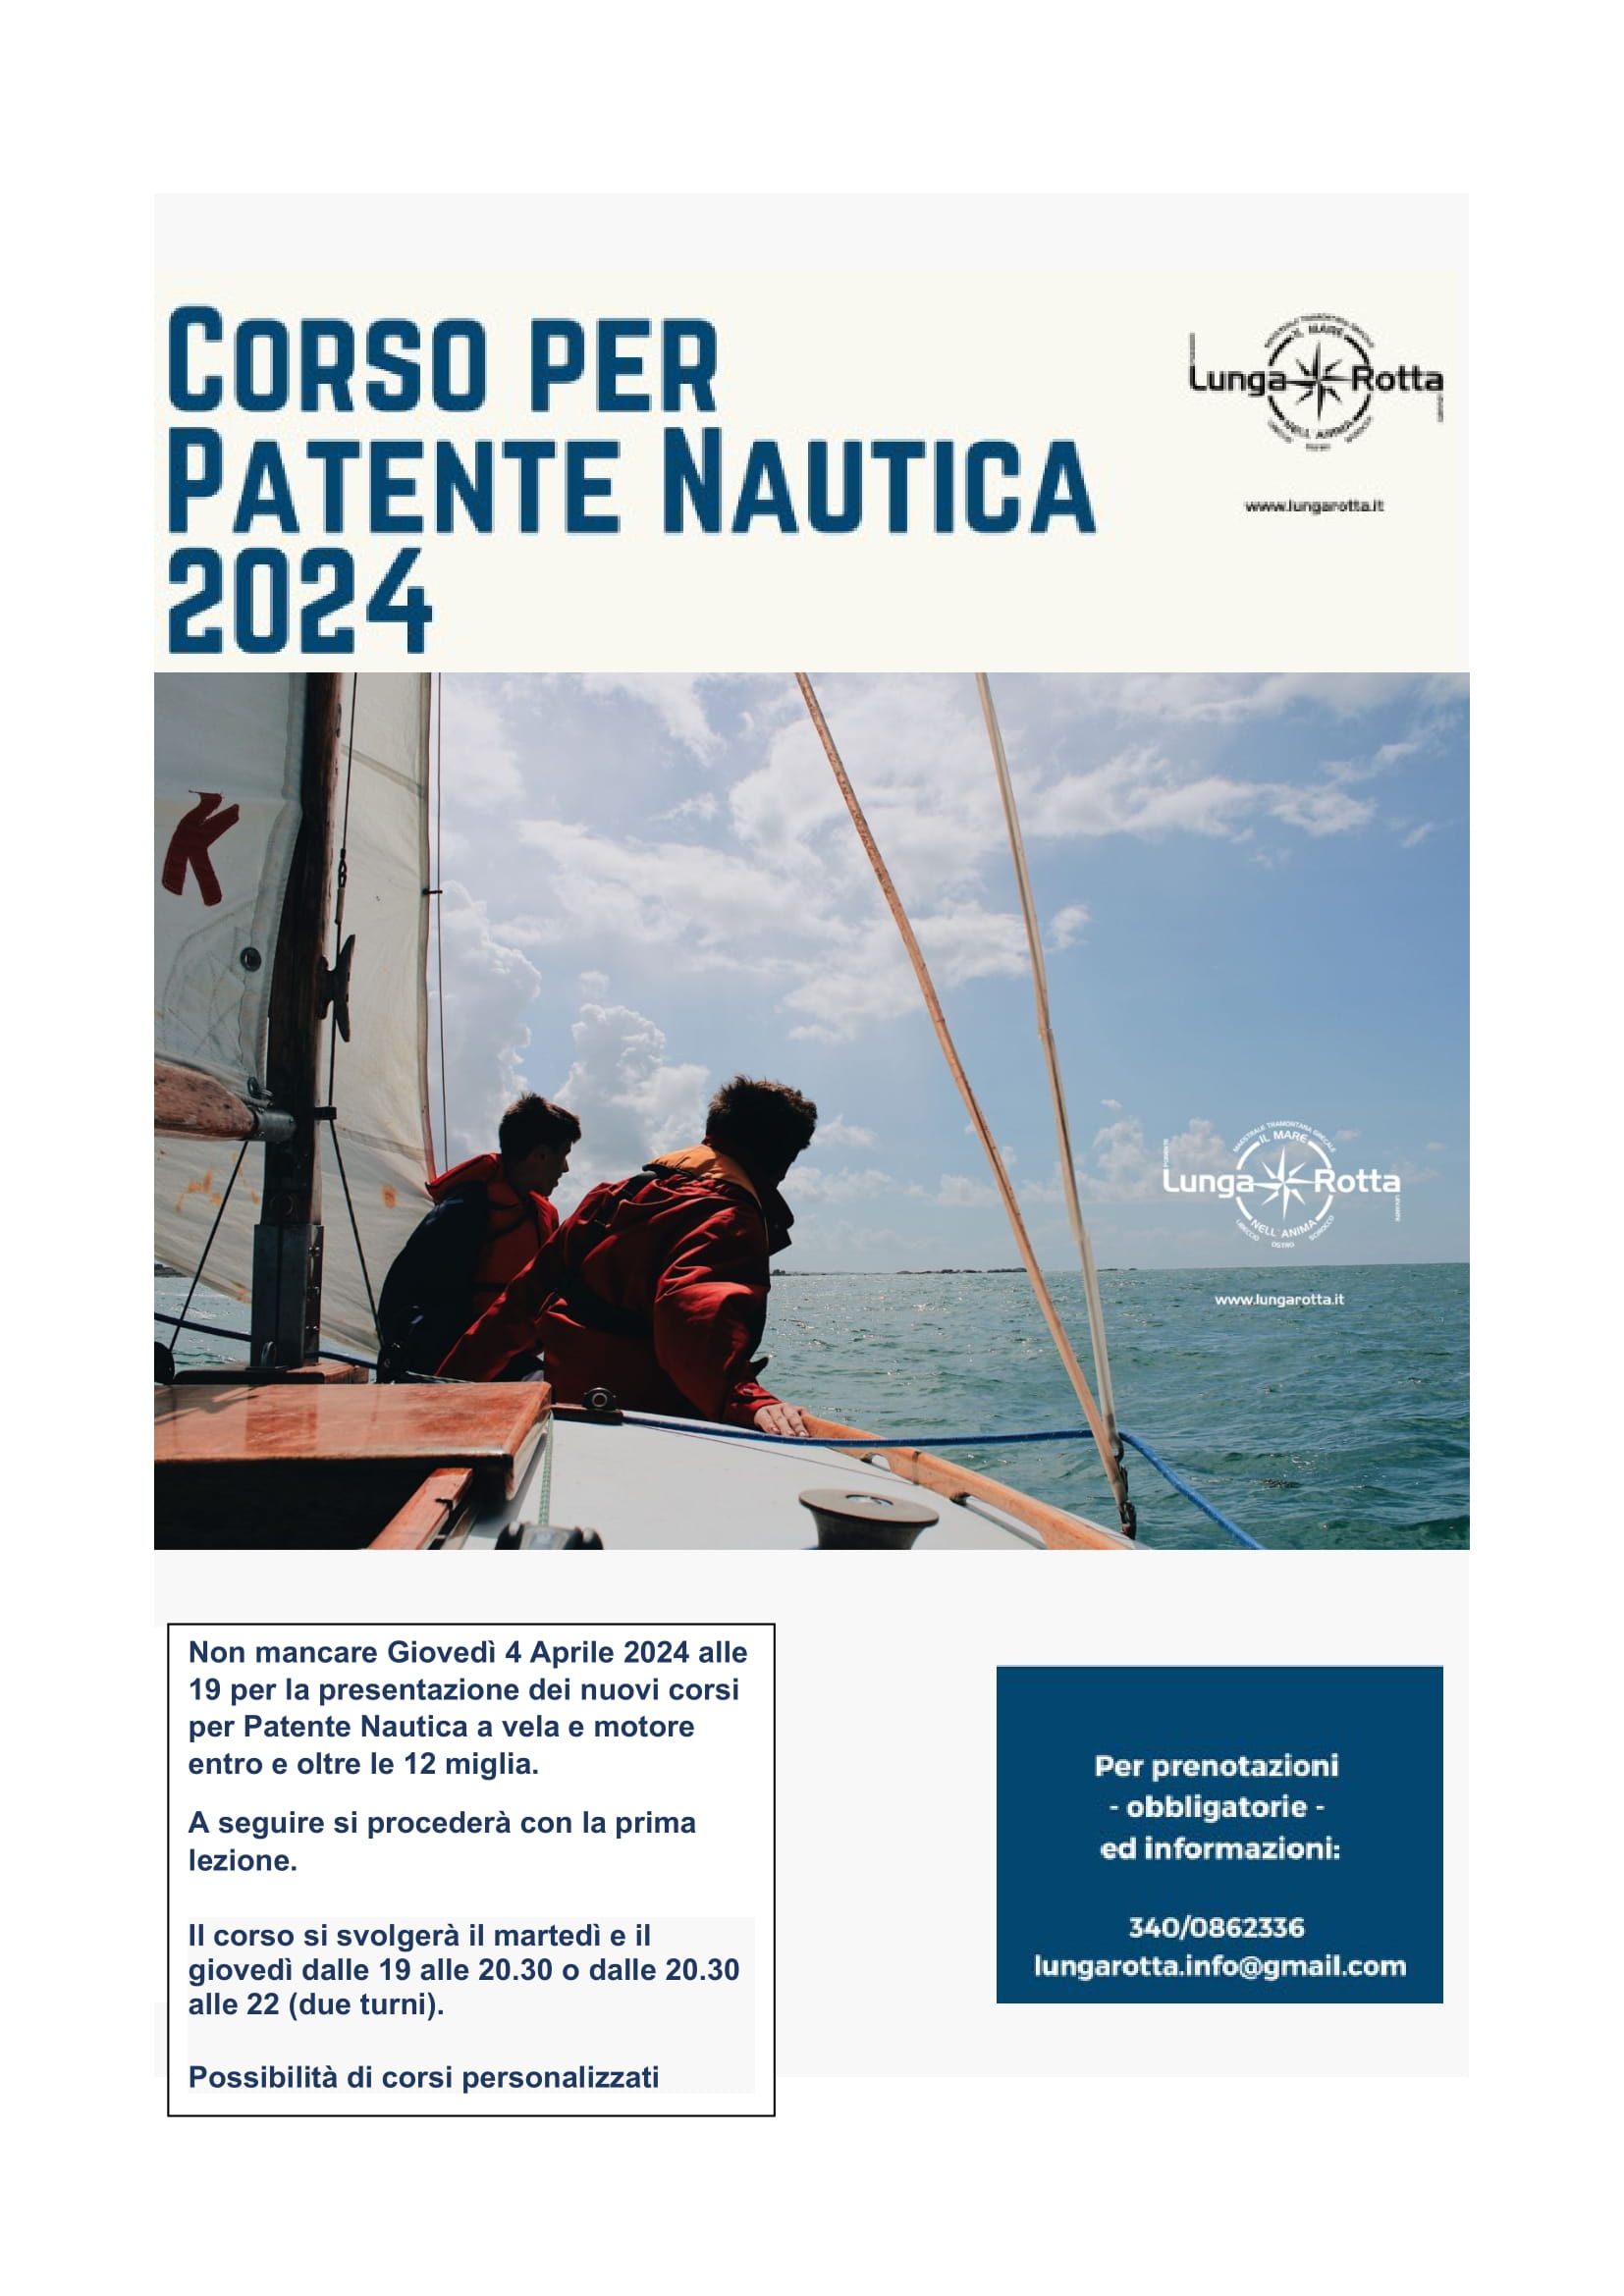 Patente Nautica